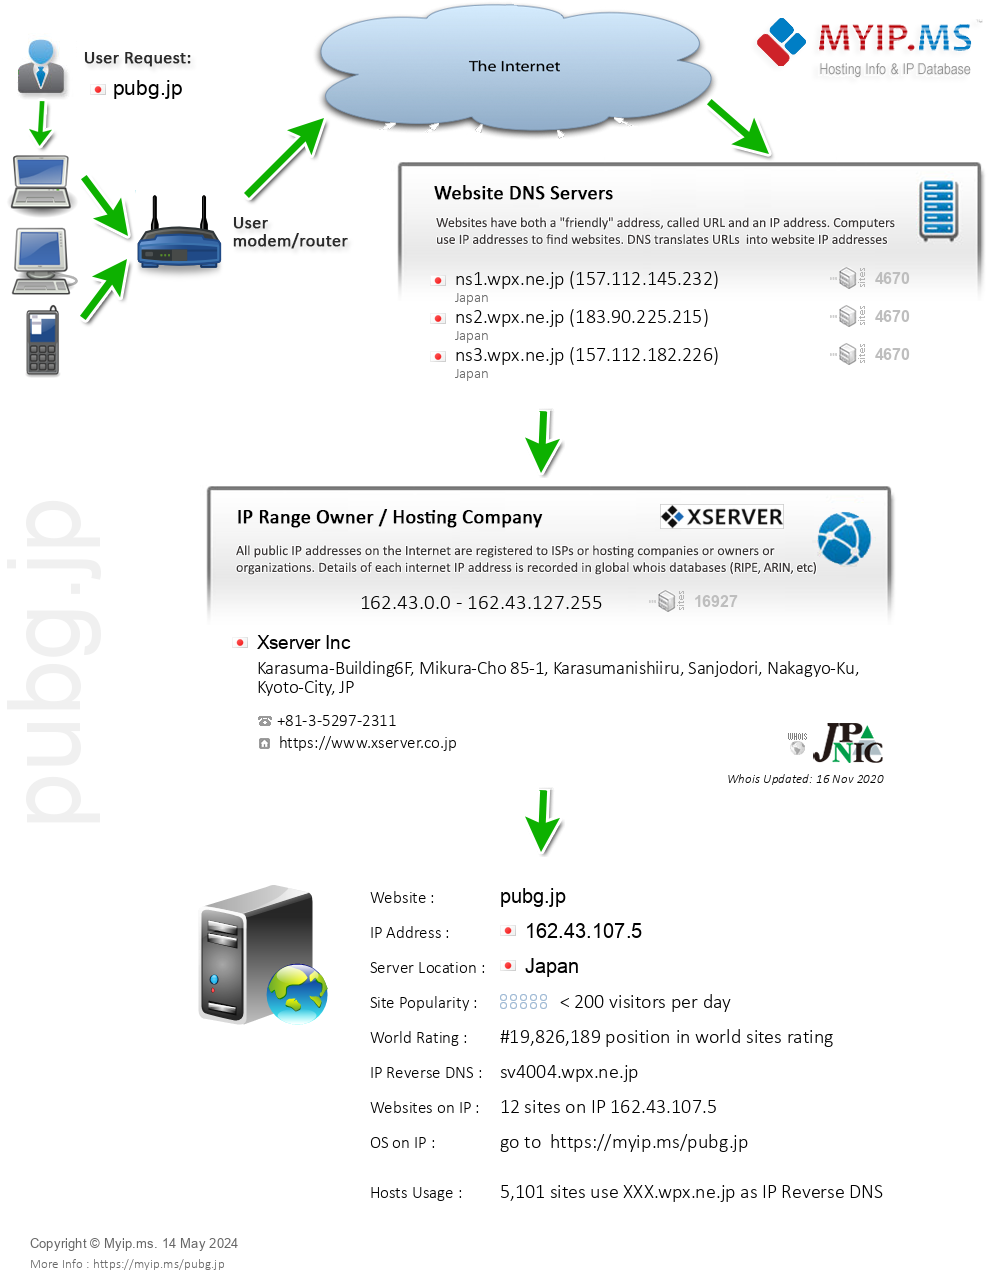 Pubg.jp - Website Hosting Visual IP Diagram